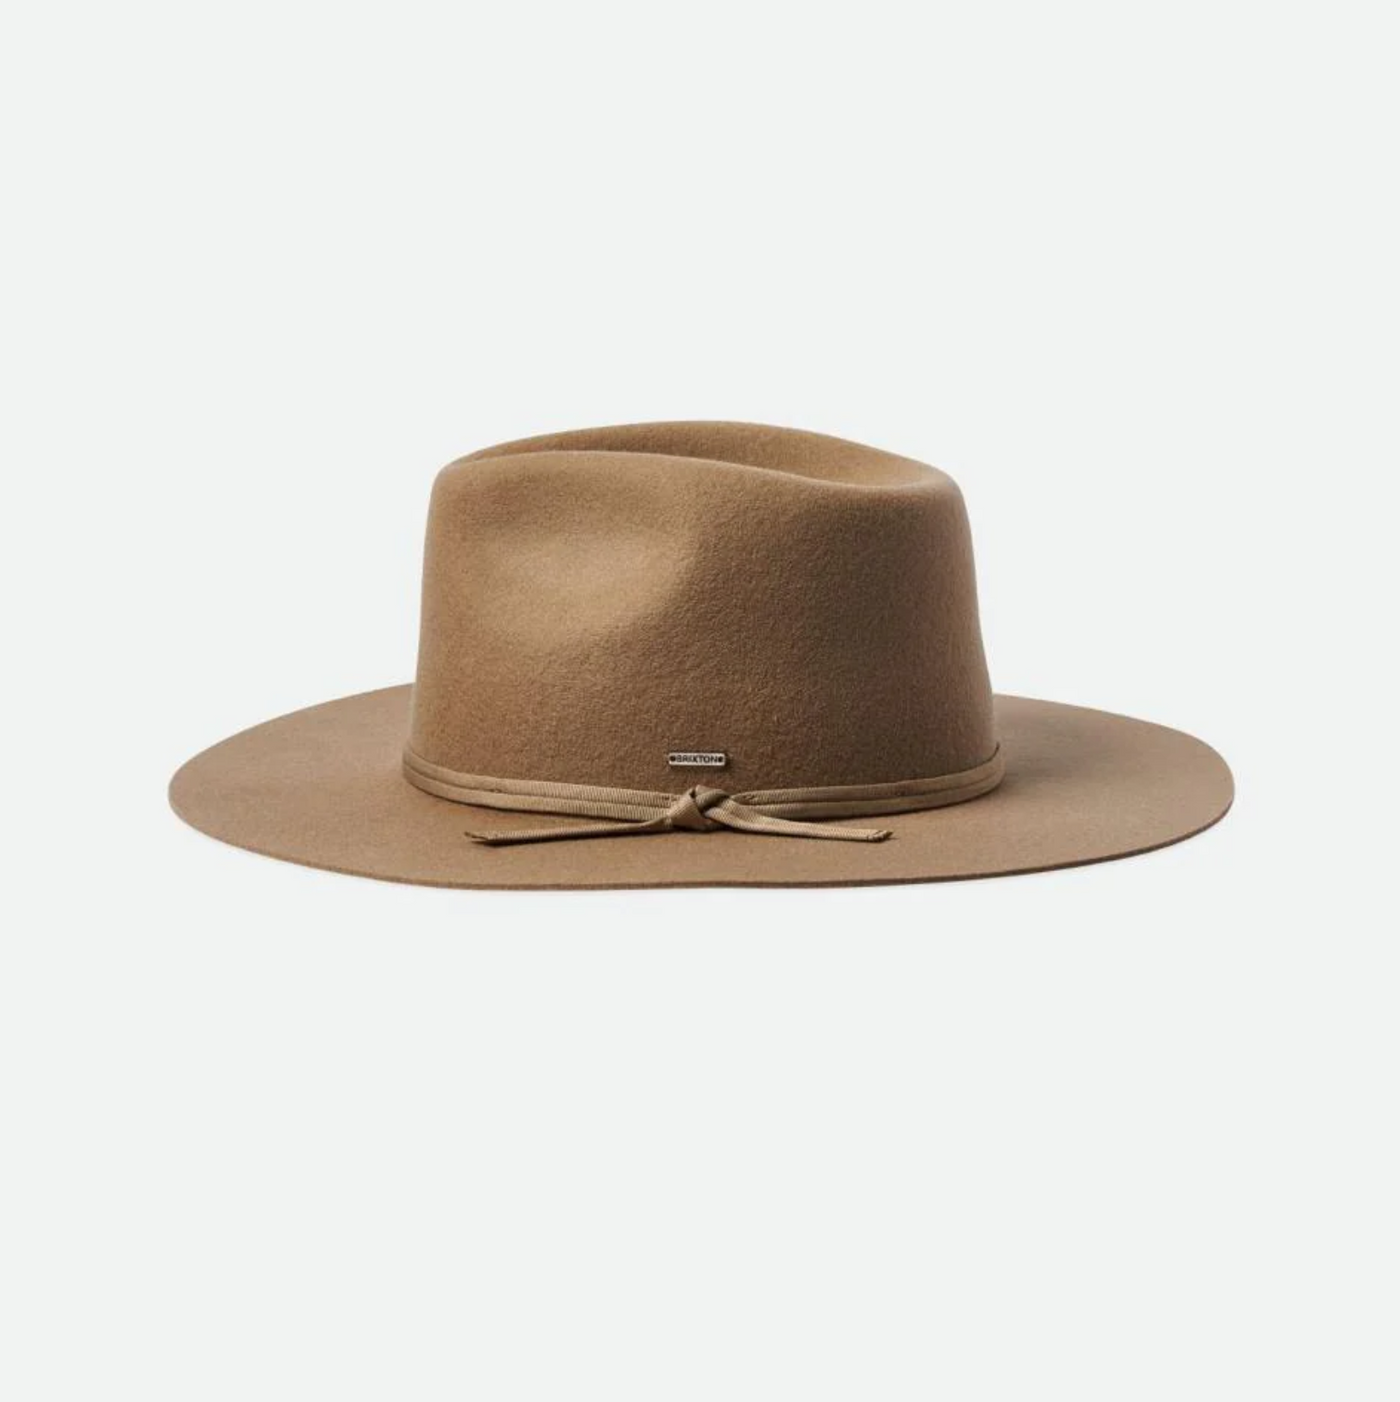 Brixton - Cohen Cowboy Hat - Sand